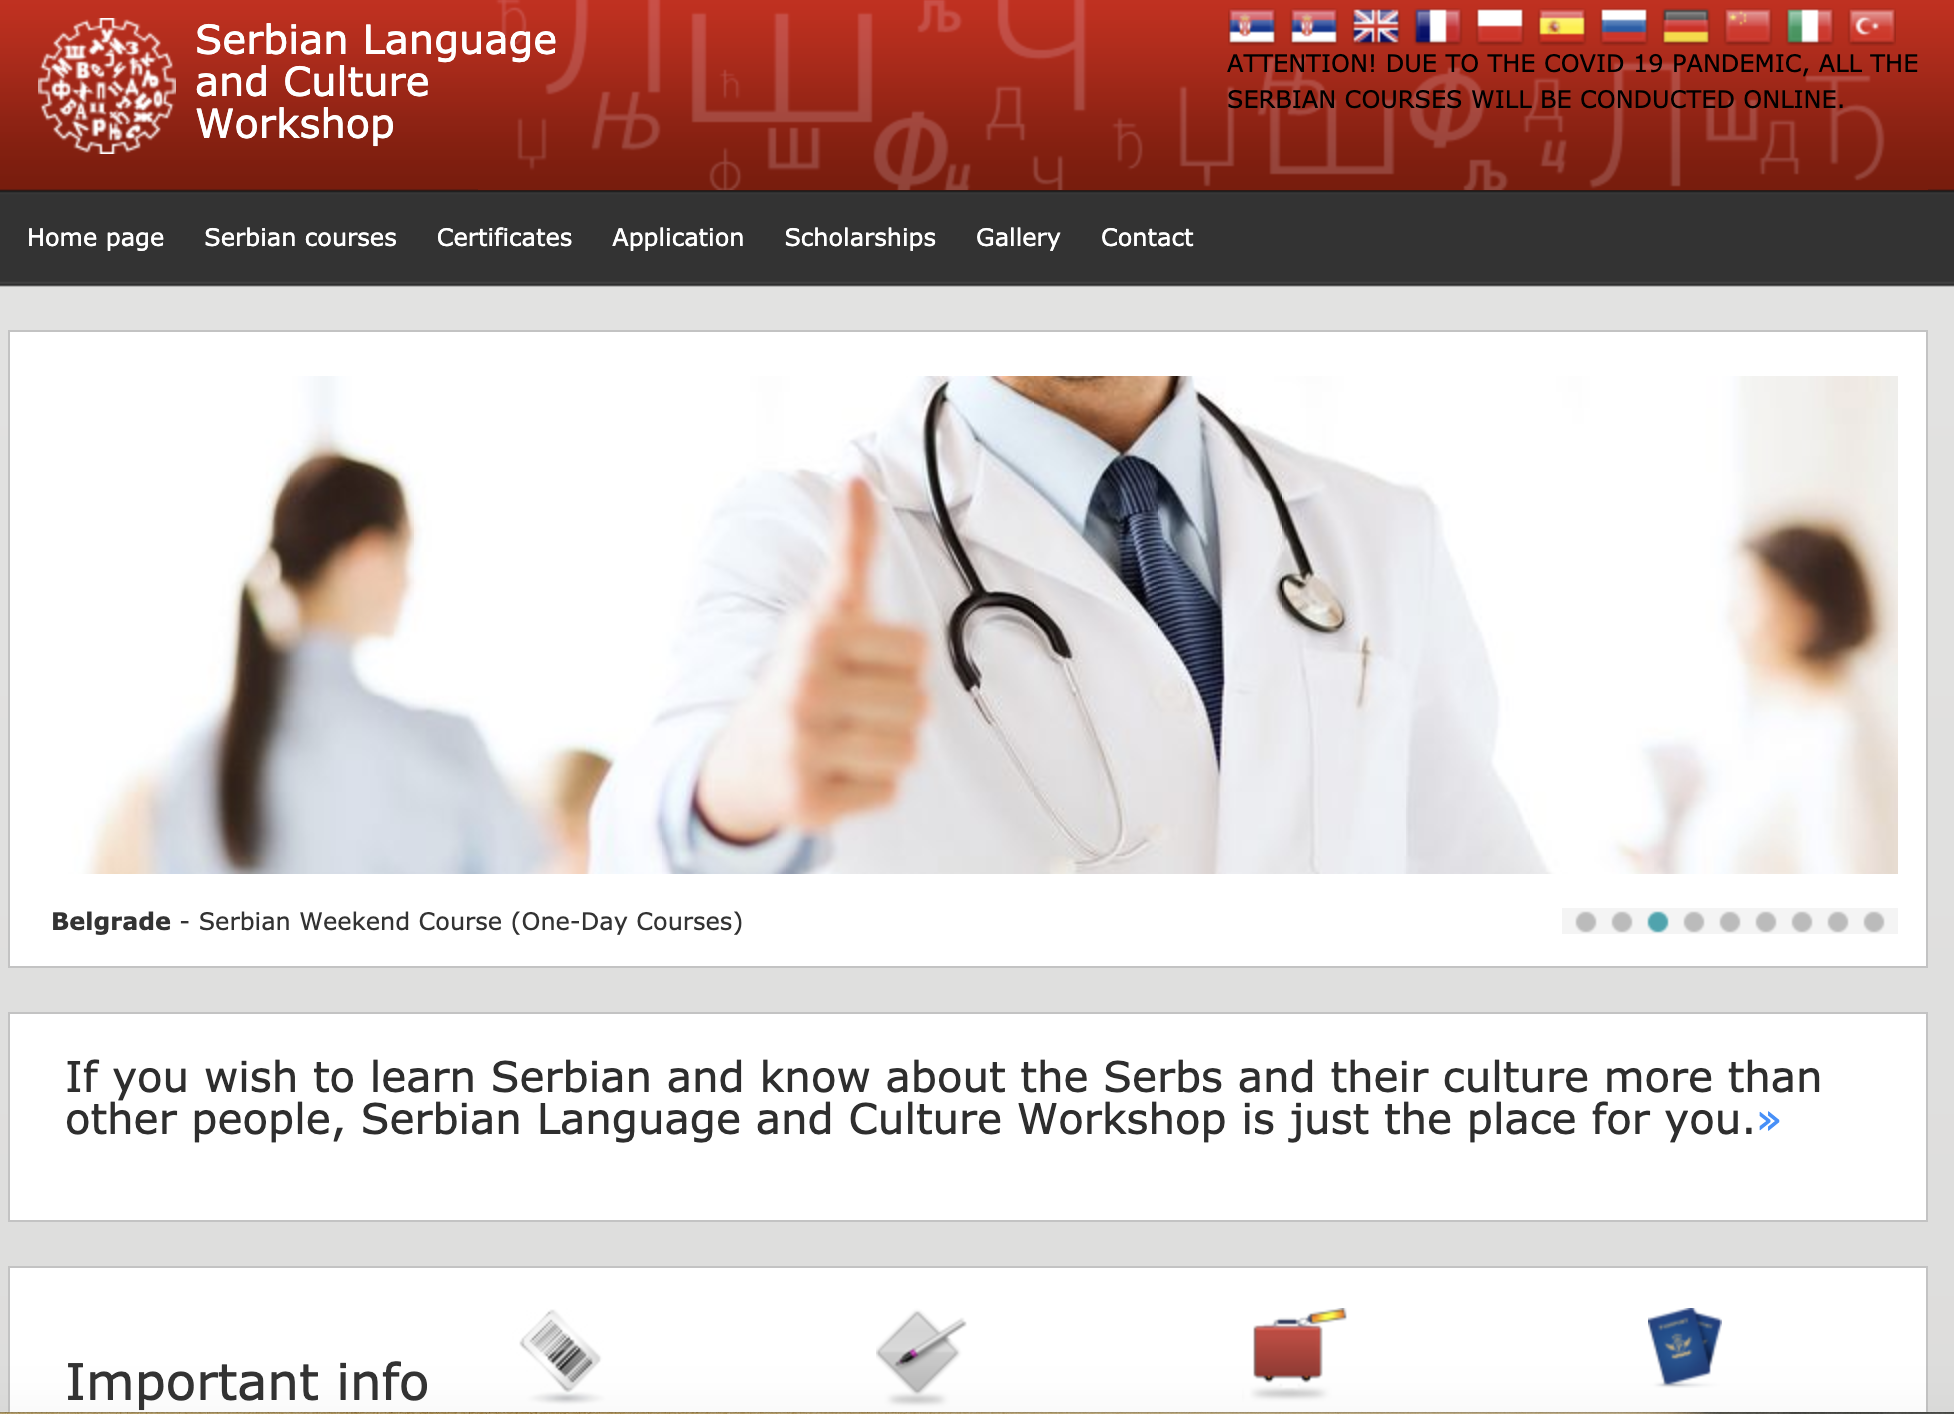 移民塞爾維亞 – 在塞爾維亞語言和文化講習班 學習塞爾維亞語